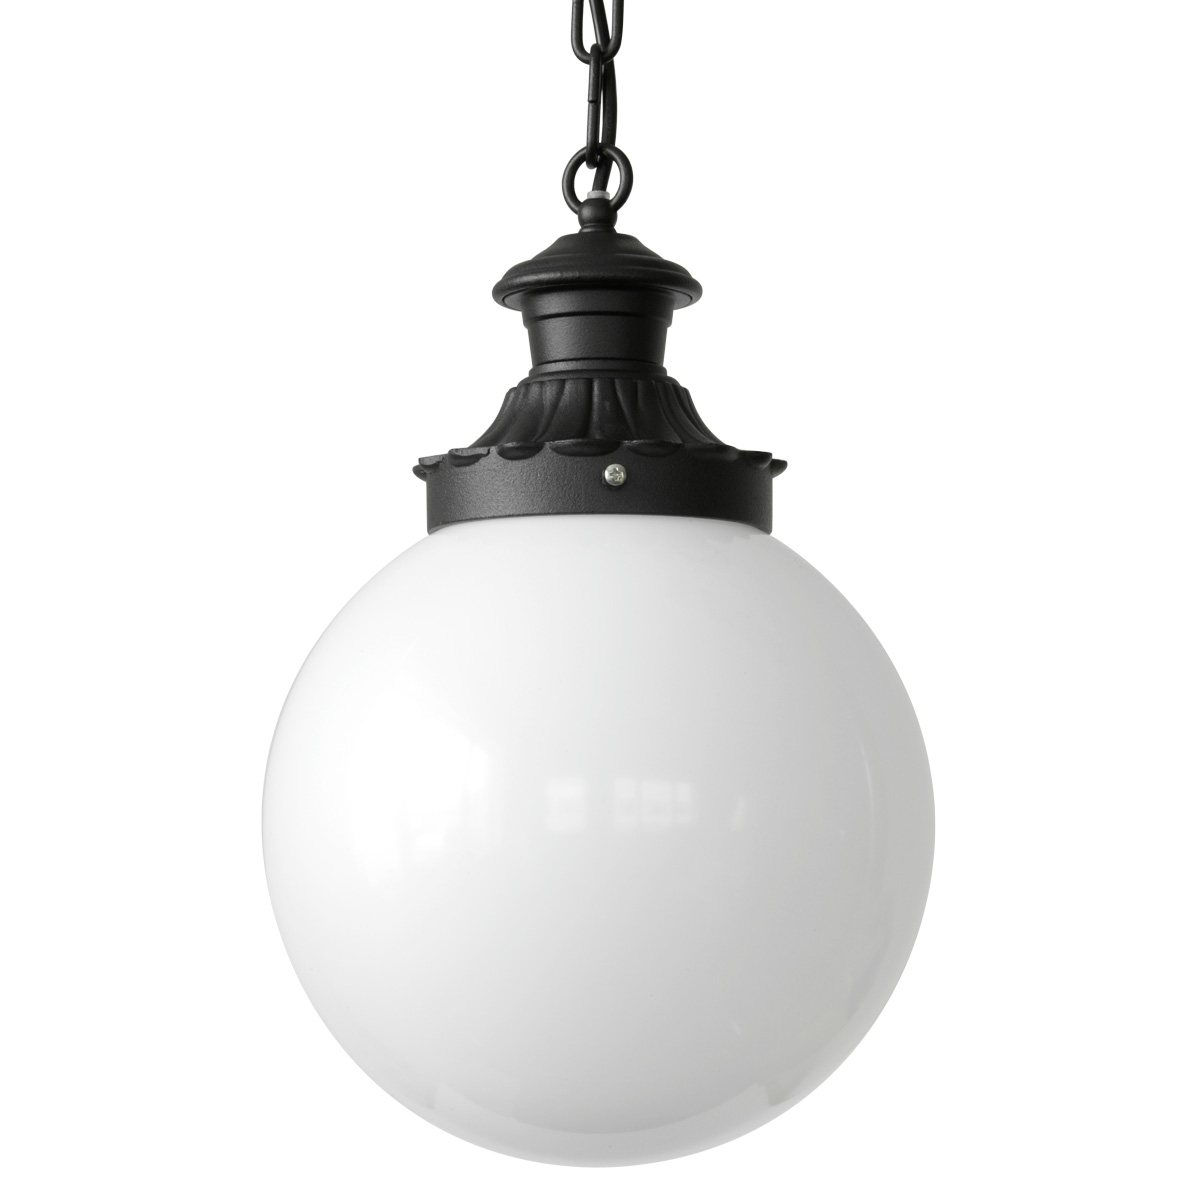 Kugel-Lampe (Ø 25 cm) für außen in zehn Farben